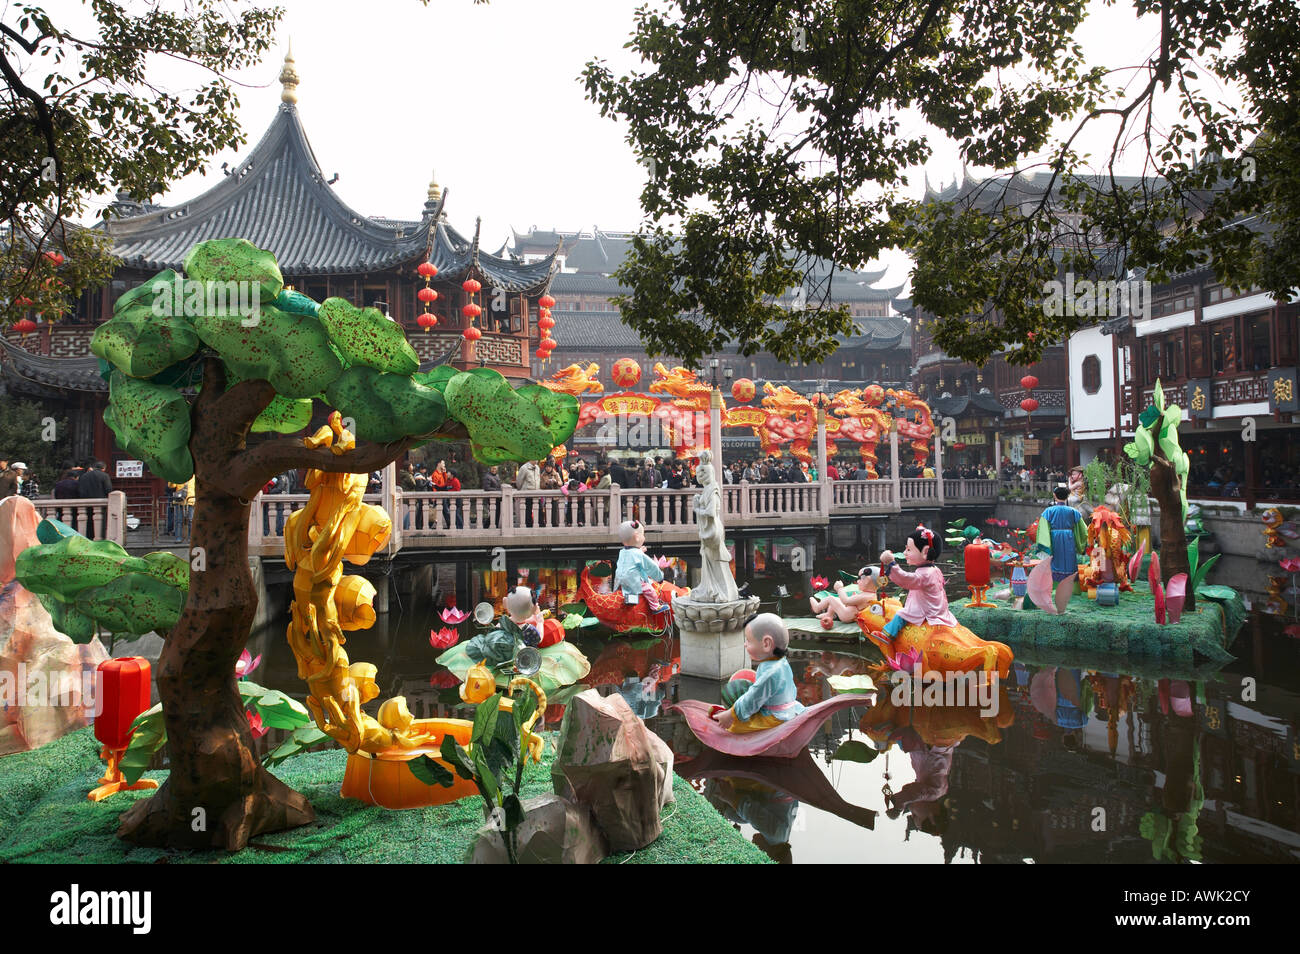 Yu Yuan Garten Teich Altstadt im Stadtteil Puxi in Shanghai China Asien Stockfoto